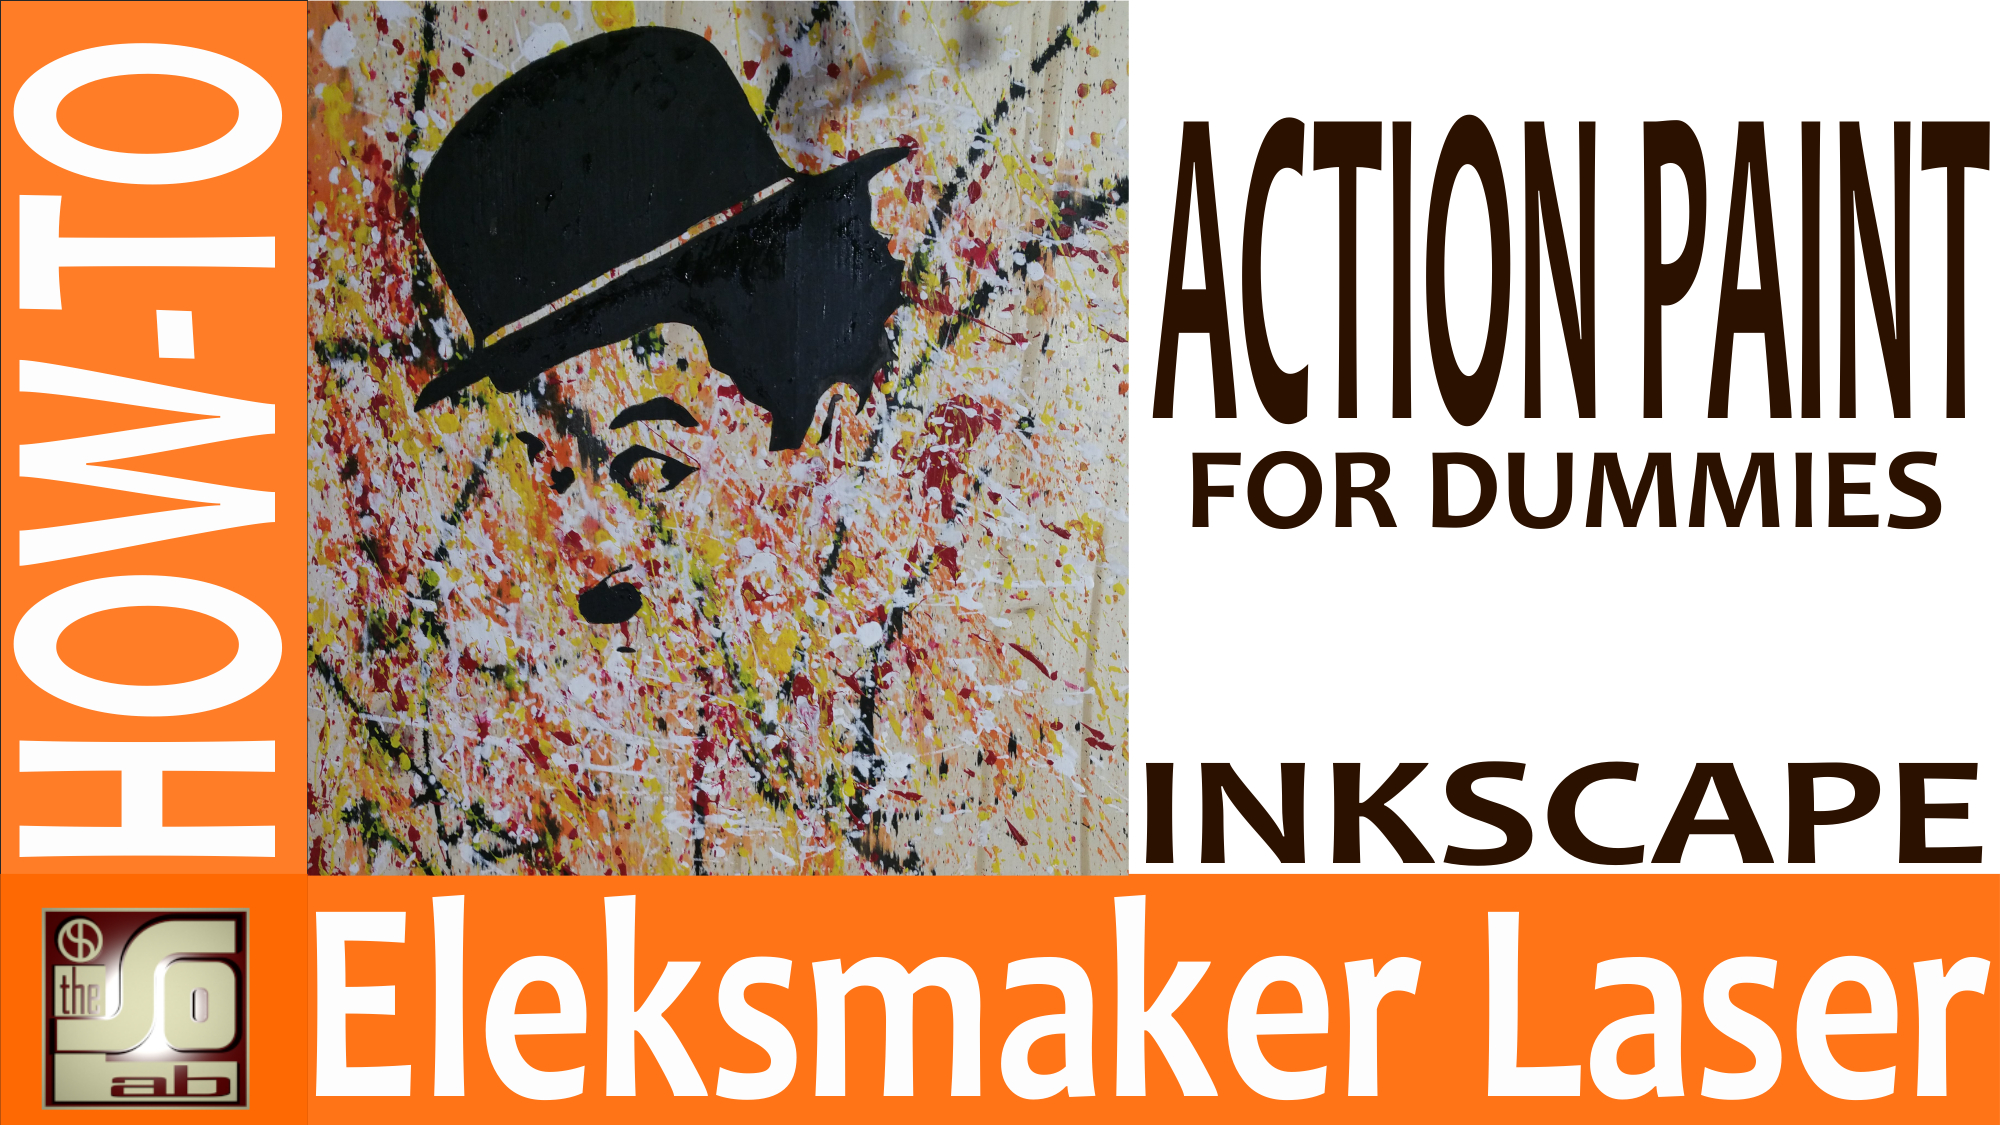 Eleksmaker Laser Inkscape e T2Laser - Chaplin Action Paint